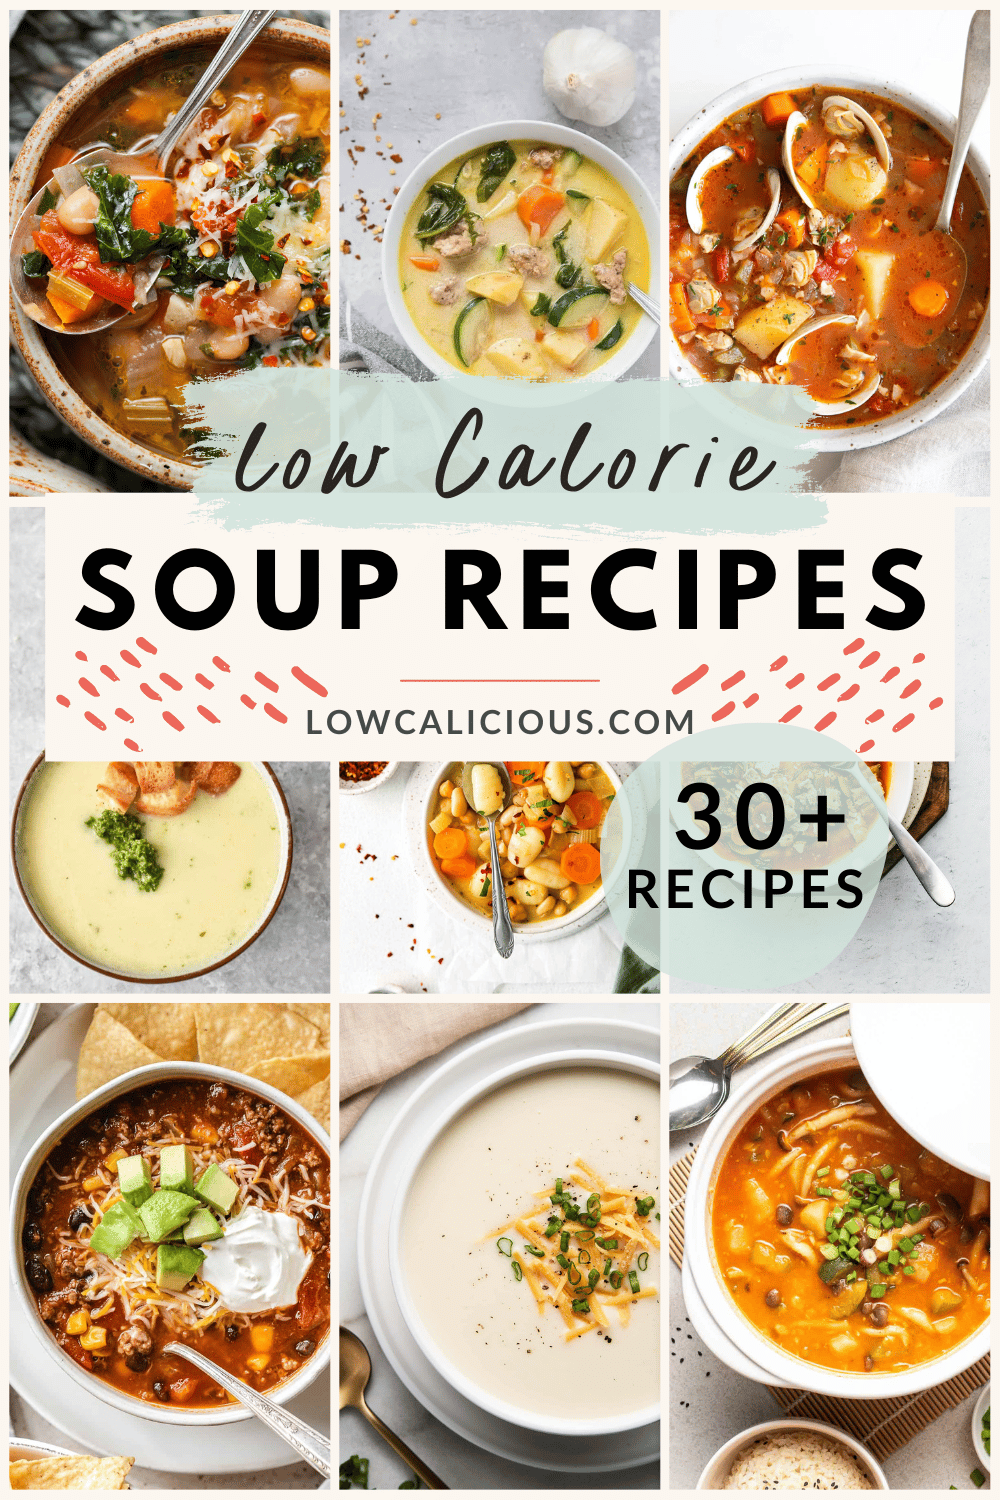 Low Calorie Soup Recipes - lowcalicious